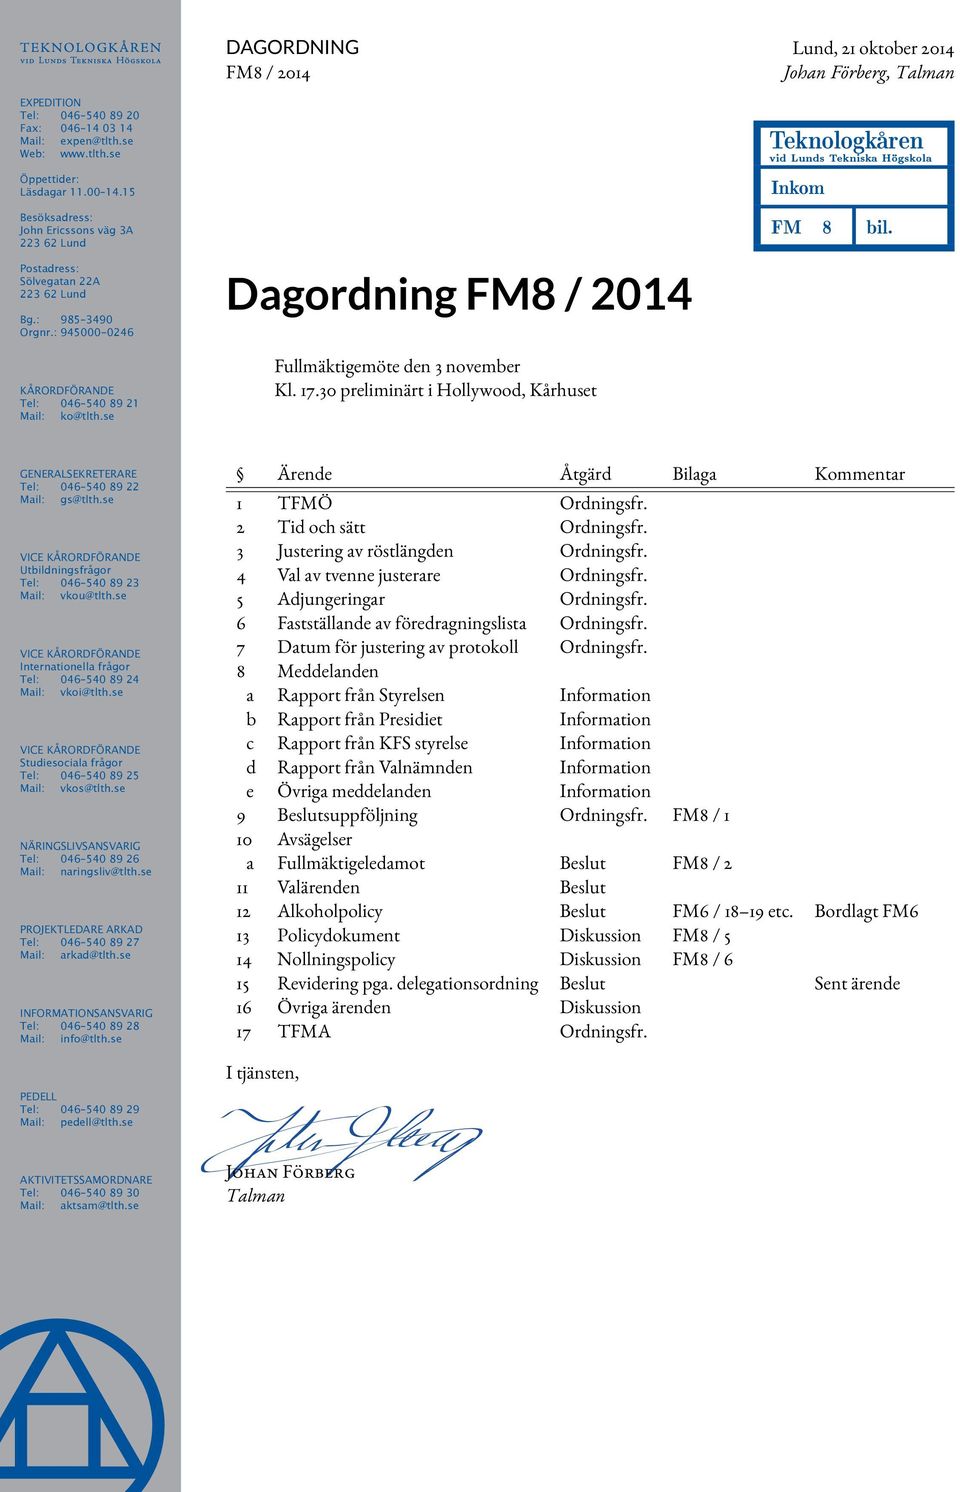 se Dagordning FM8 / 2014 Fullmäktigemöte den 3 november Kl. 17.30 preliminärt i Hollywood, Kårhuset Teknologkåren vid Lunds Tekniska Högskola Inkom FM 8 bil.